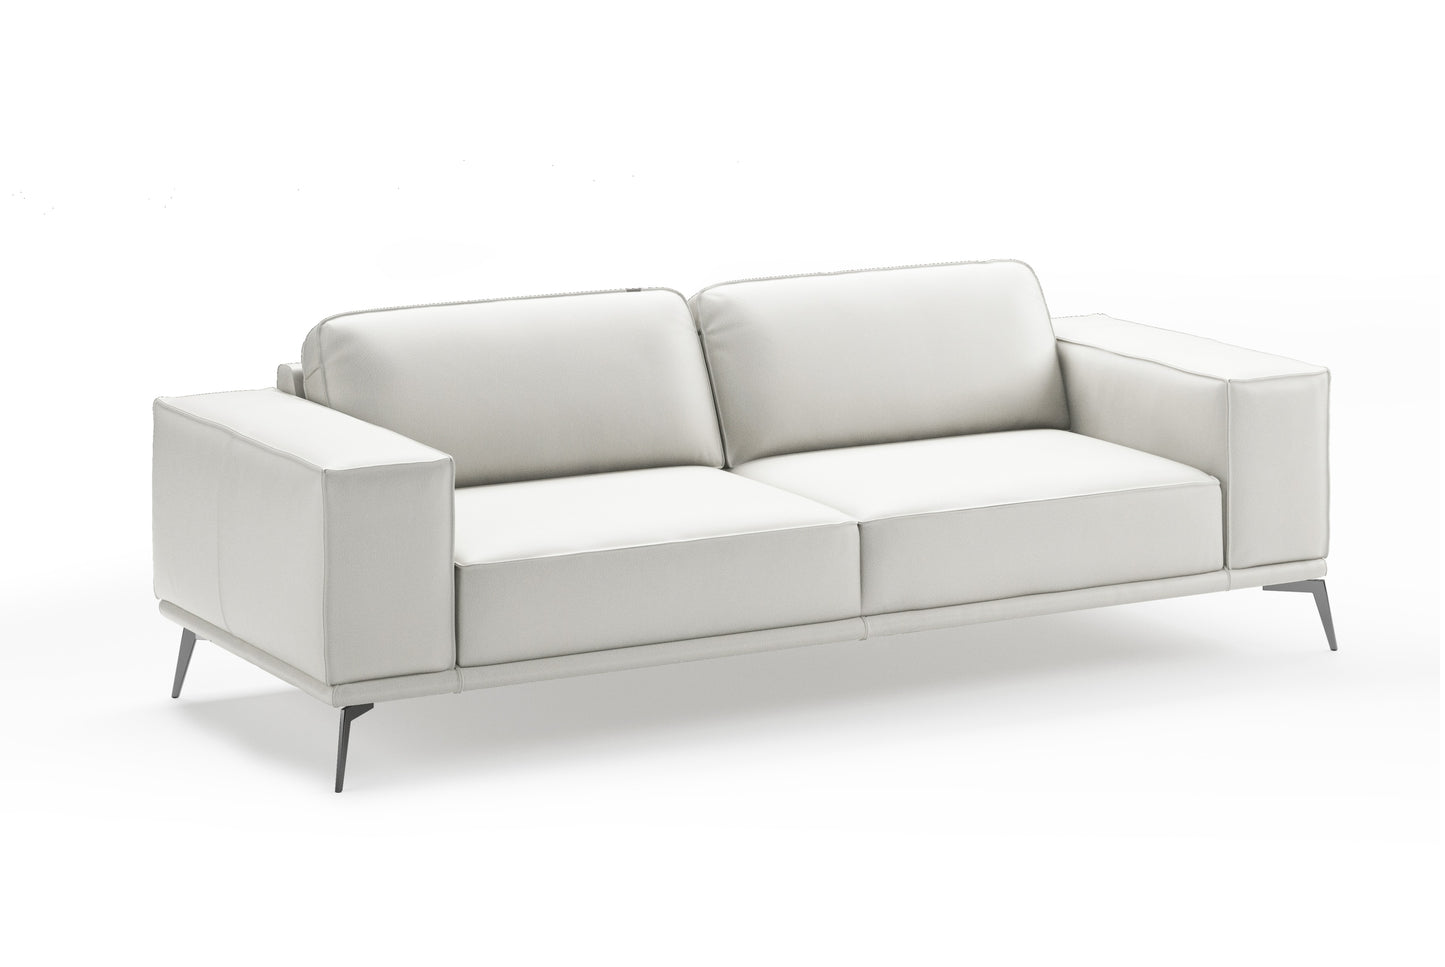 Coronelli Collezioni Soho - Contemporary Italian White Leather Sofa | Modishstore | Sofas